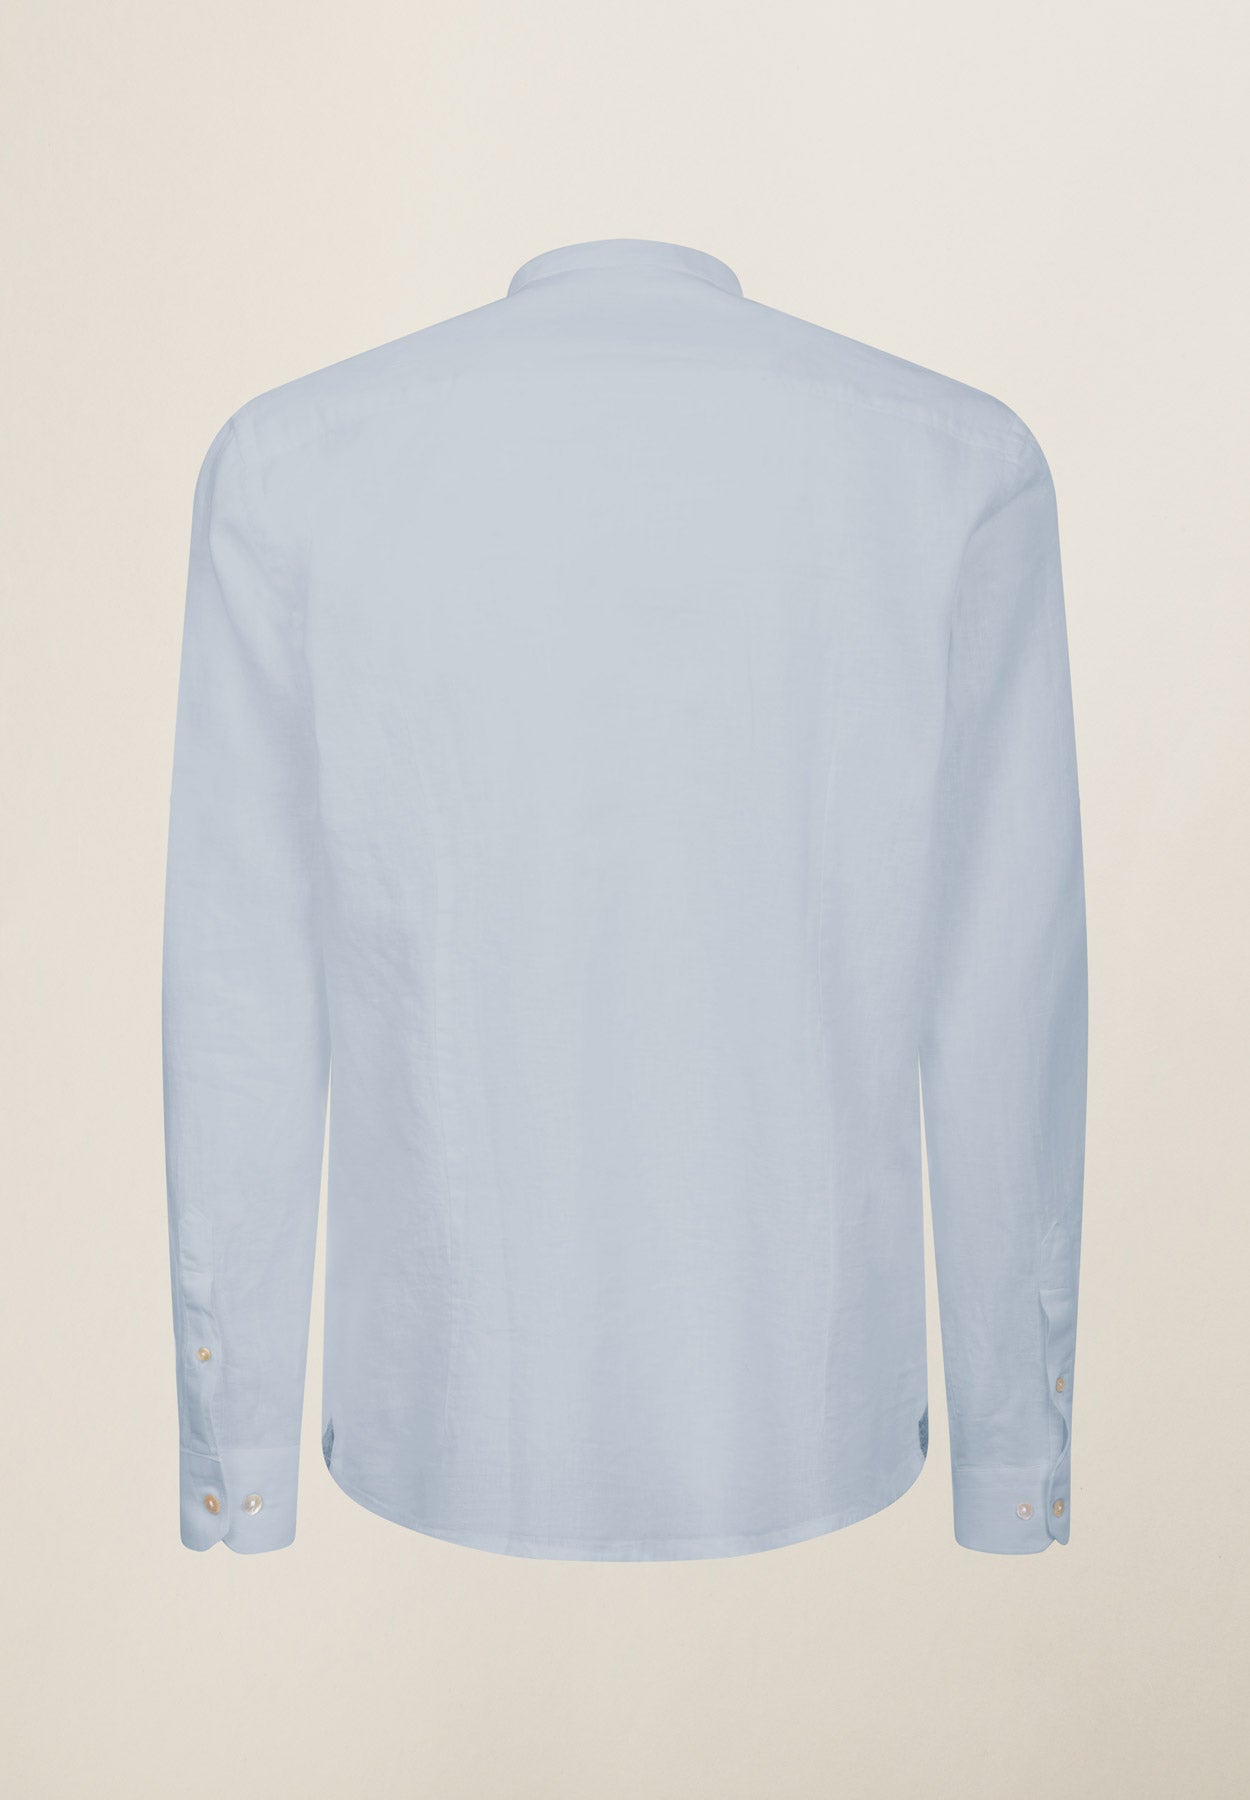 Camicia azzurra collo coreano cotone-lino slim fit